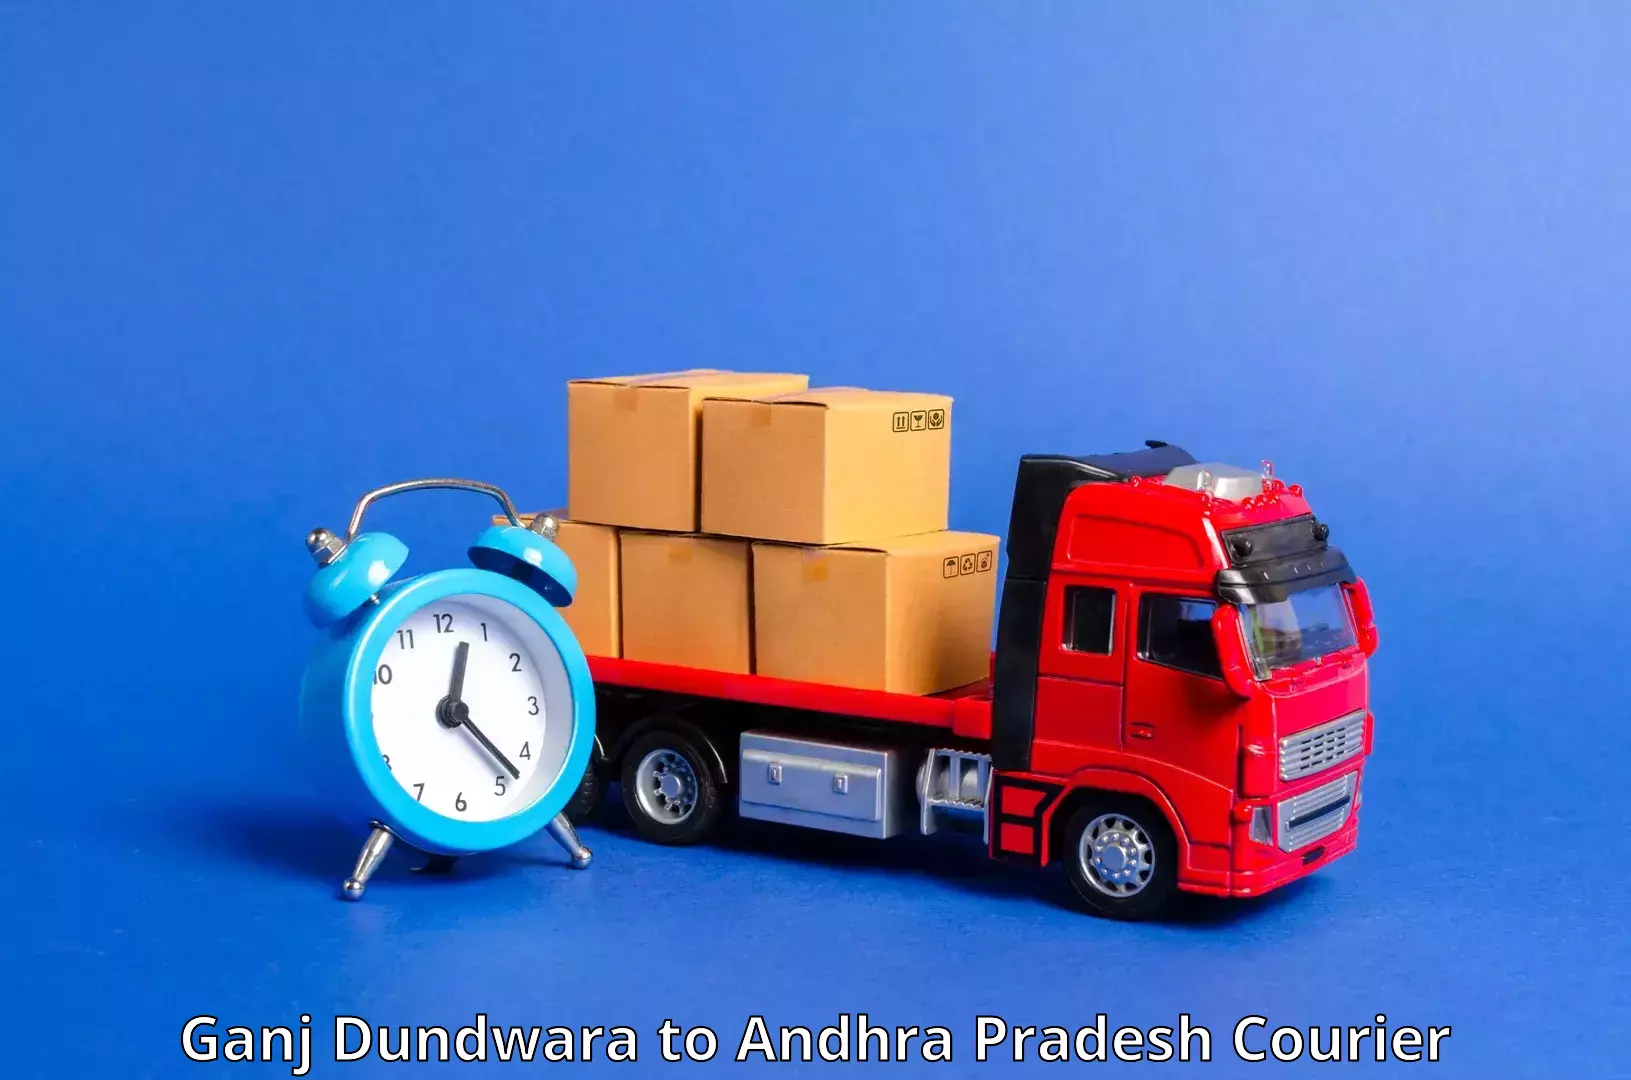 Nationwide shipping services Ganj Dundwara to Buckinghampet